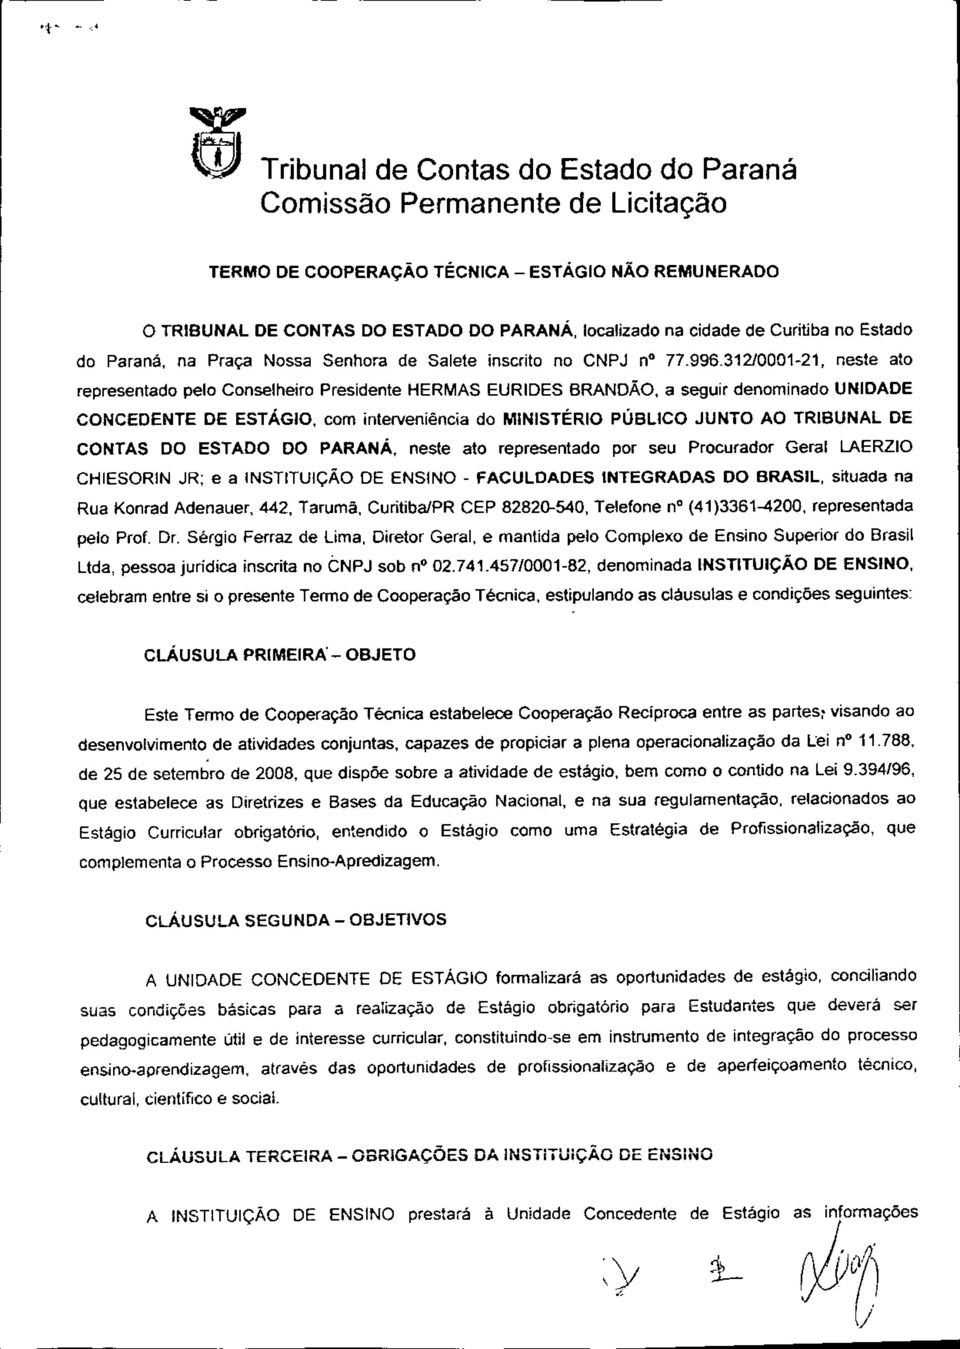 31210001-21, neste ato representado pelo Conselheiro Presidente HERMAS EURIDES BRANDÃO, a seguir denominado UNIDADE CONCEDENTE DE ESTÁGIO, com interveniência do MNISTÉRIO PÚBLICO JUNTO AO TRIBUNAL DE